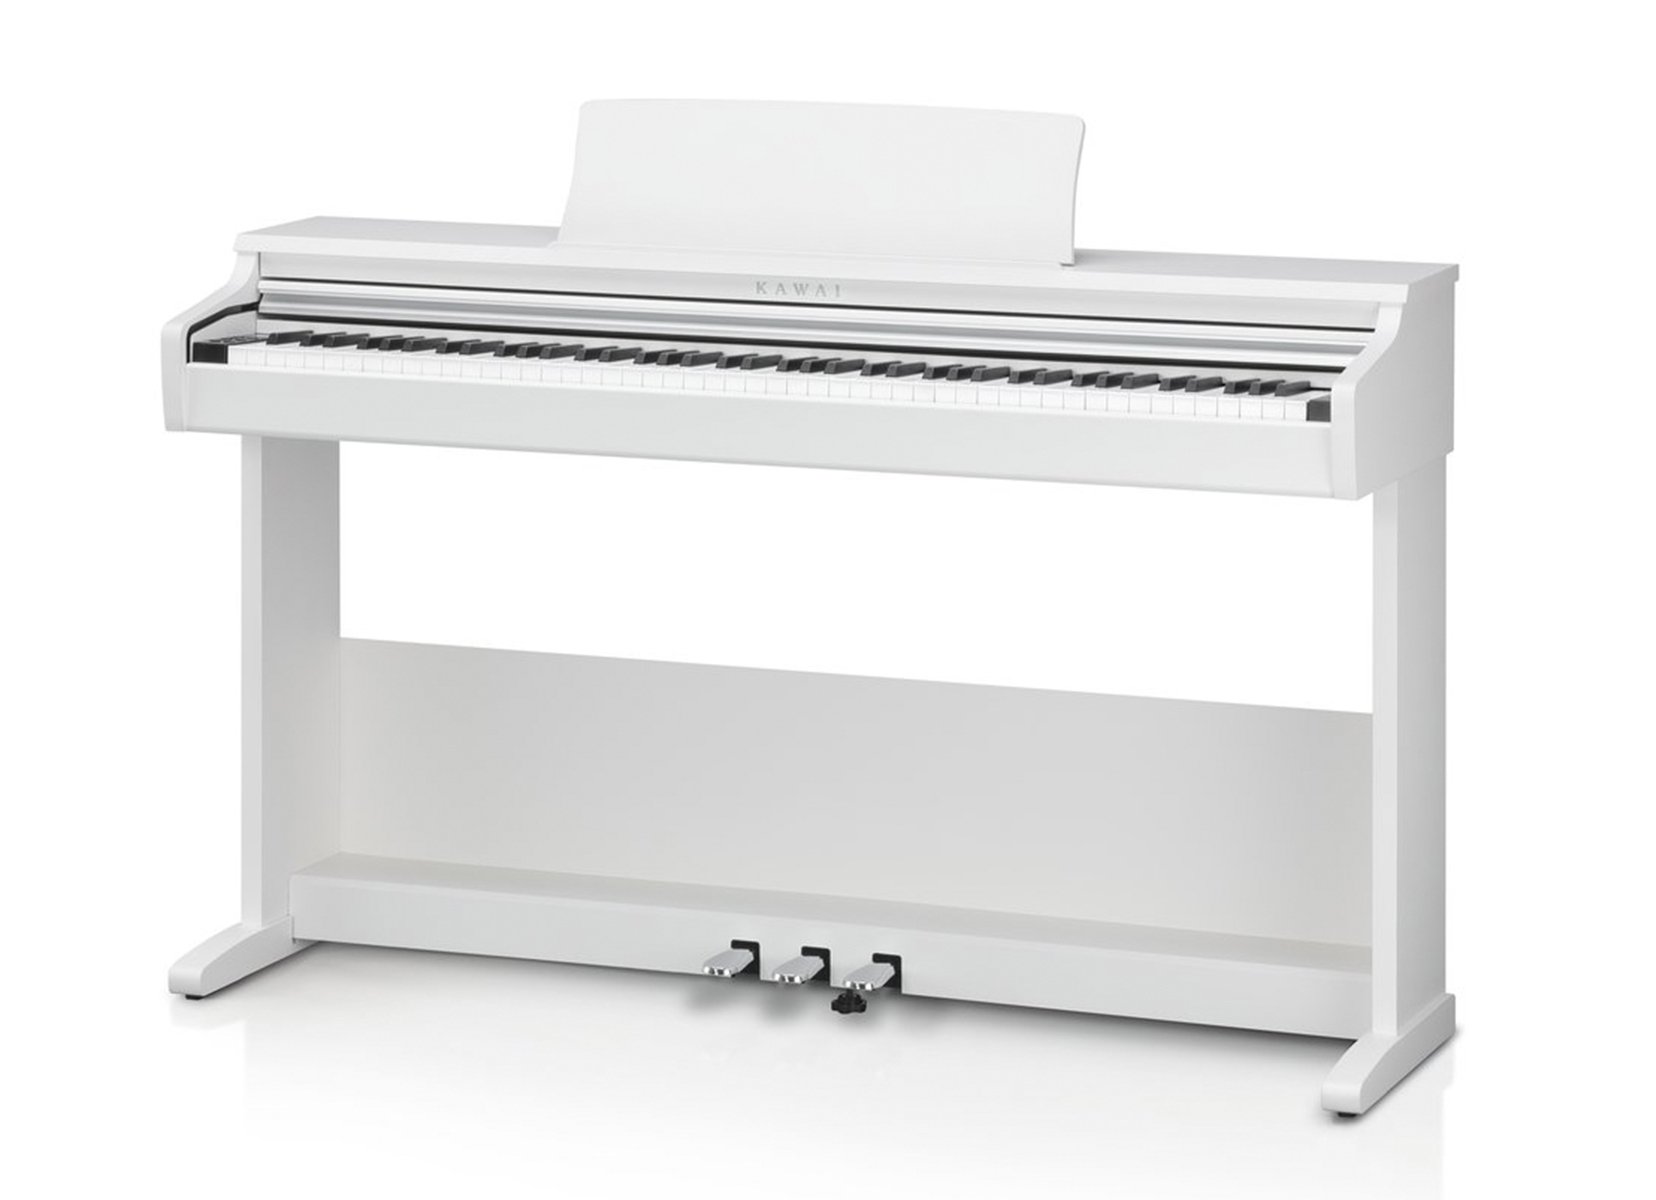 Kawai KDP75W цифровое пианино, банкетка, 192 полифония,механика RHC, цвет белый